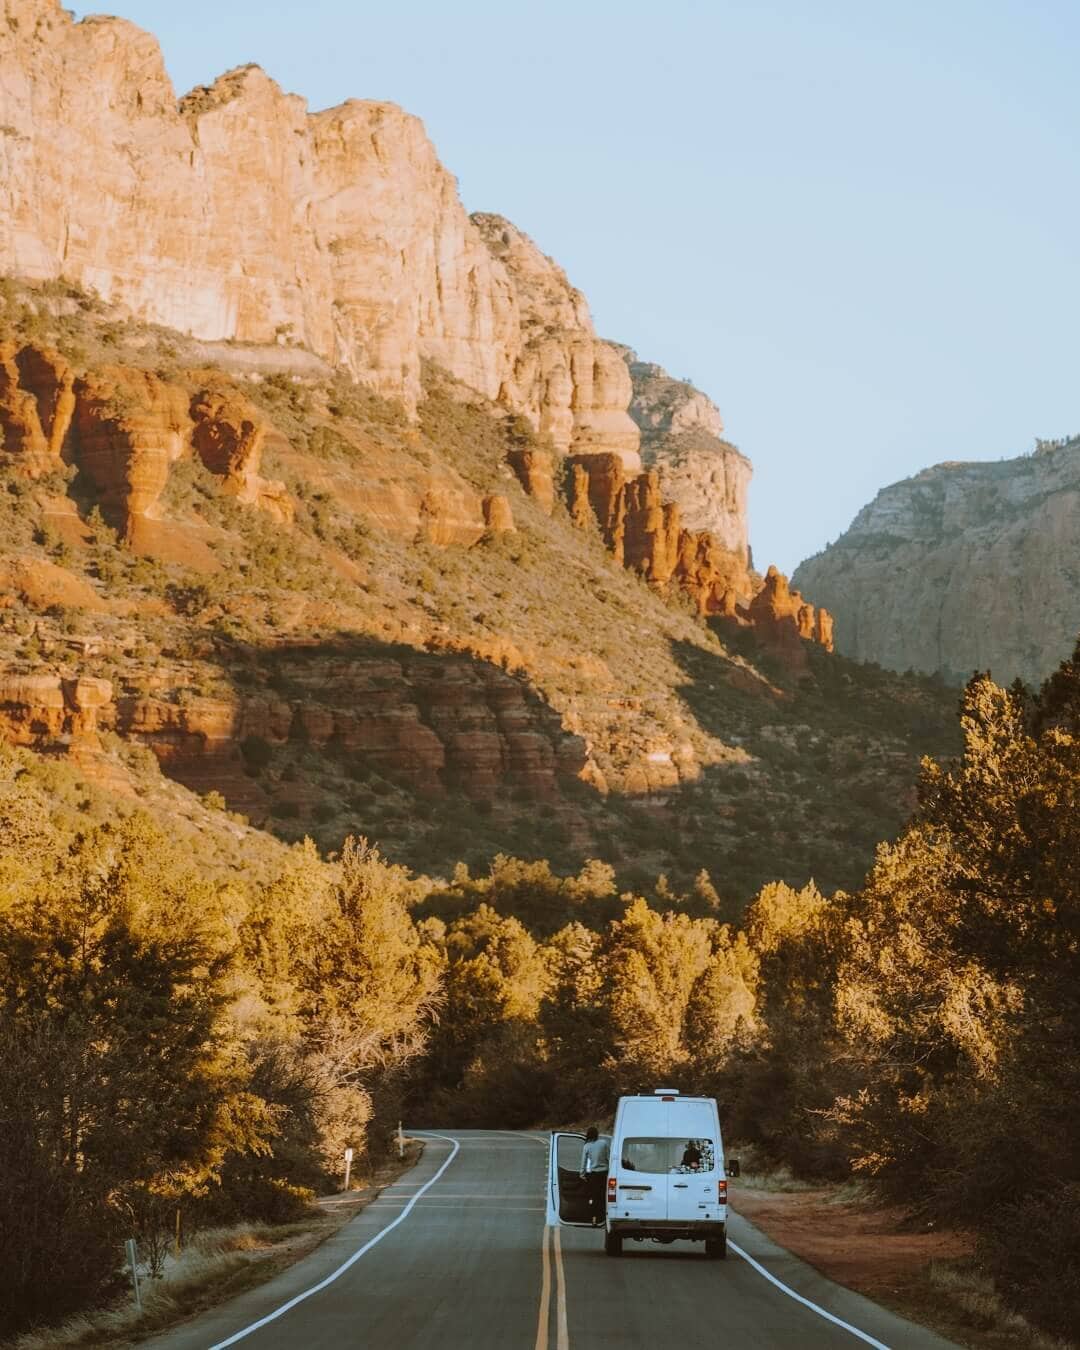 campervan on Boynton Pass Road sunrise sedona arizona